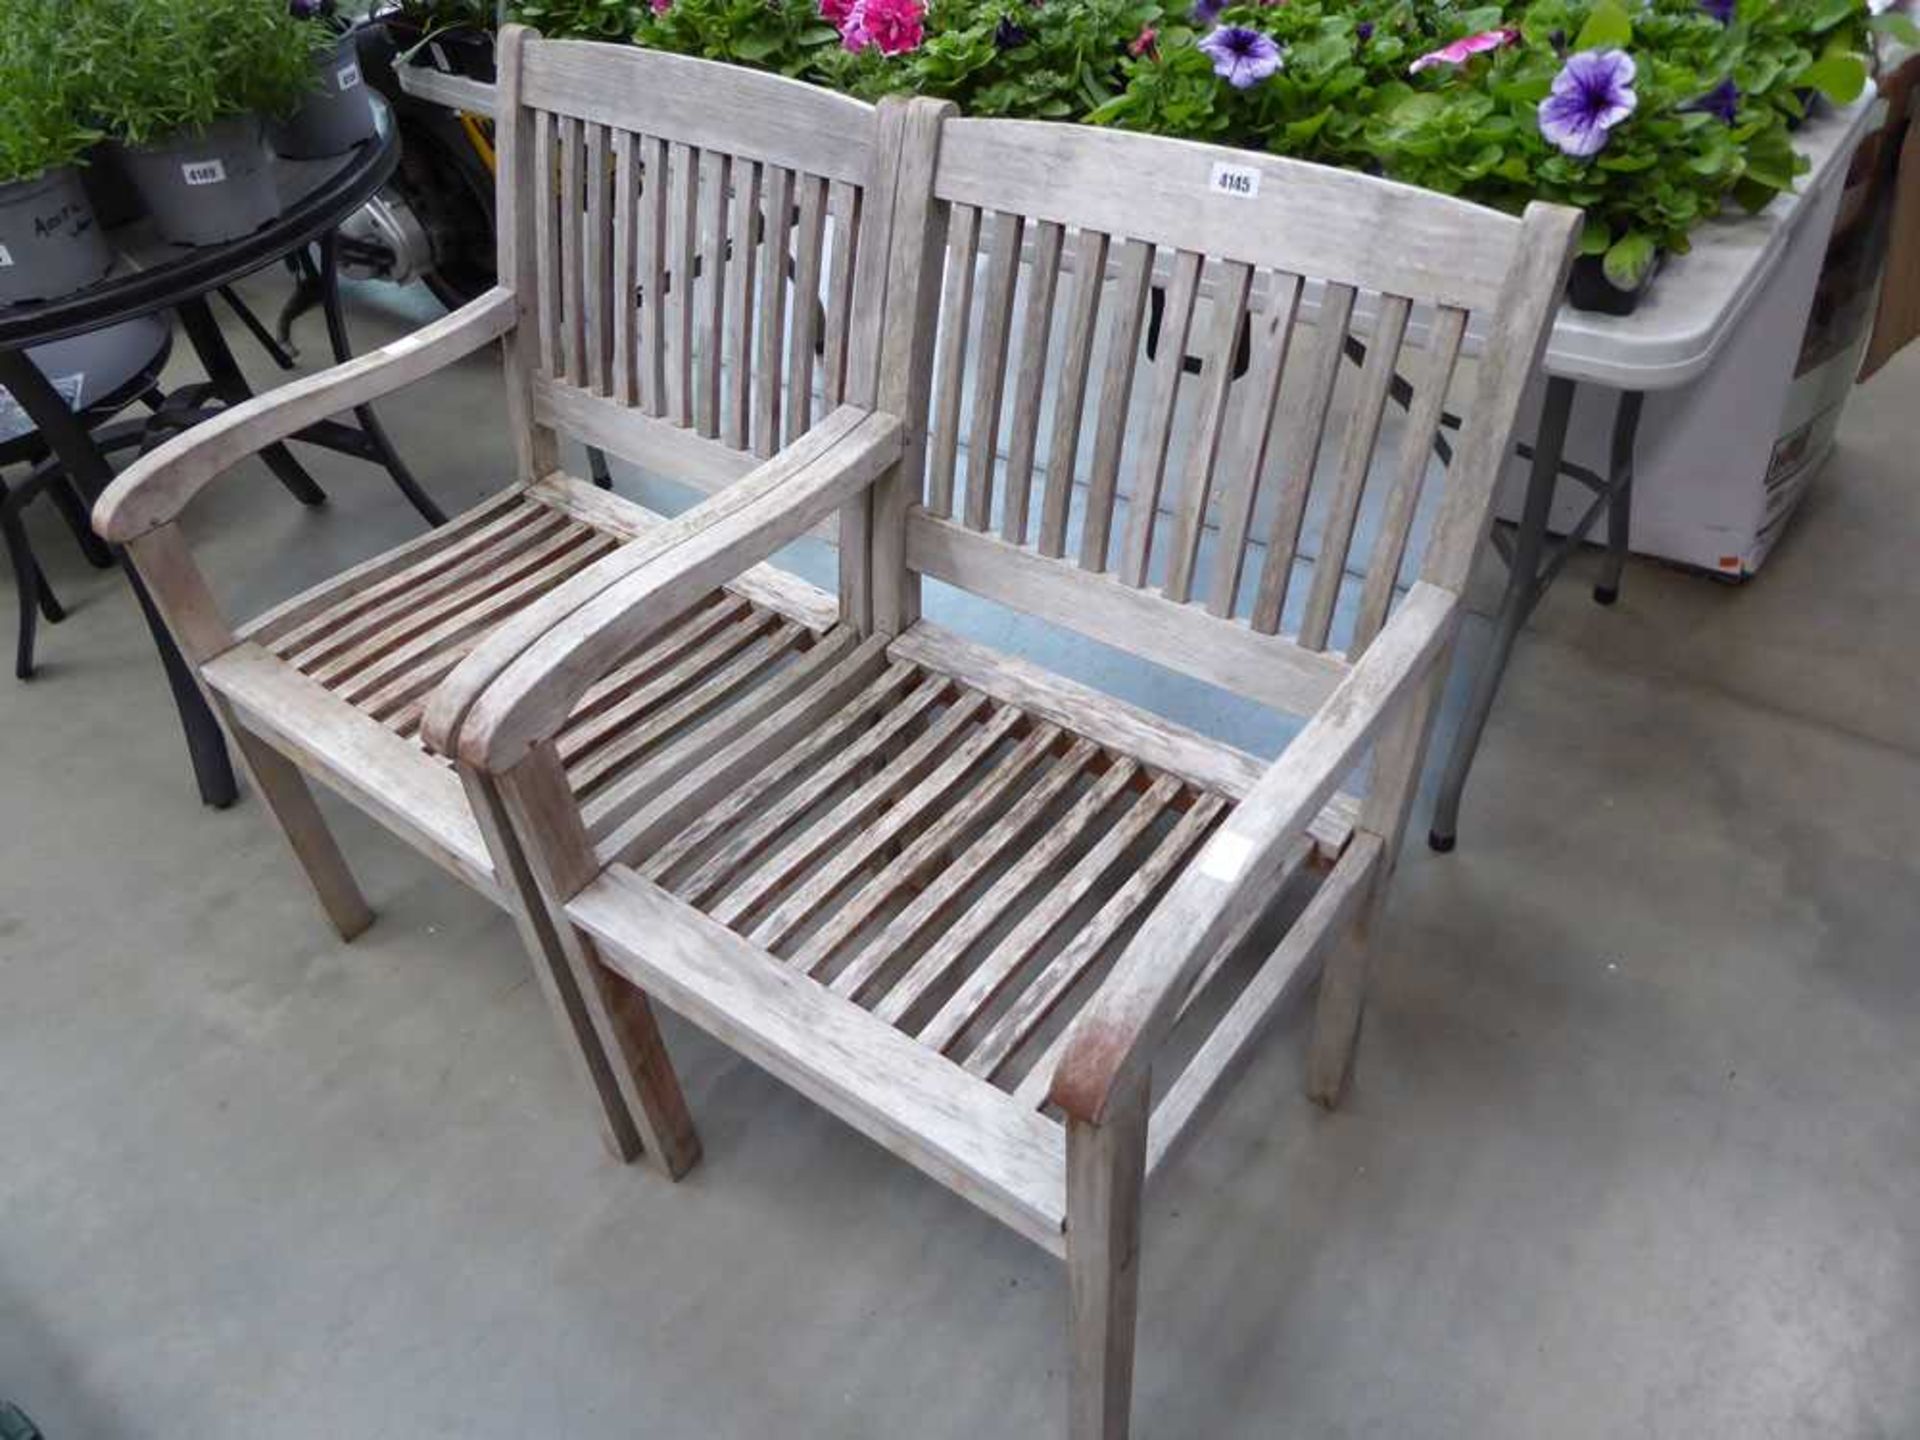 2 wooden garden chairs